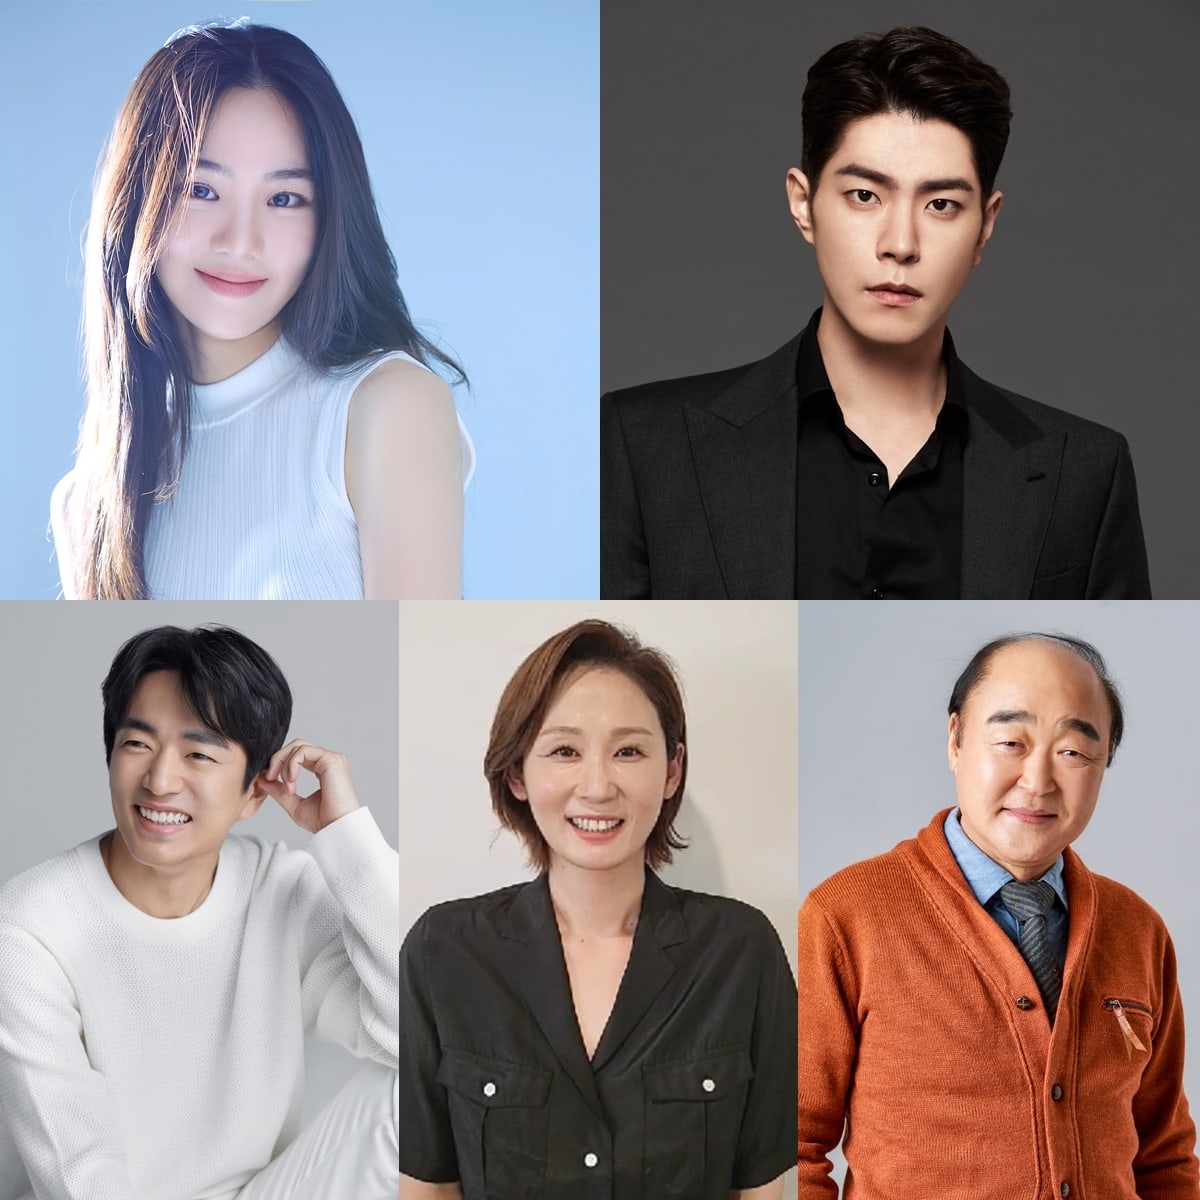 Han Ji Eun, Hong Jong Hyun y más confirmados para comedia dramática sobre inversión en acciones